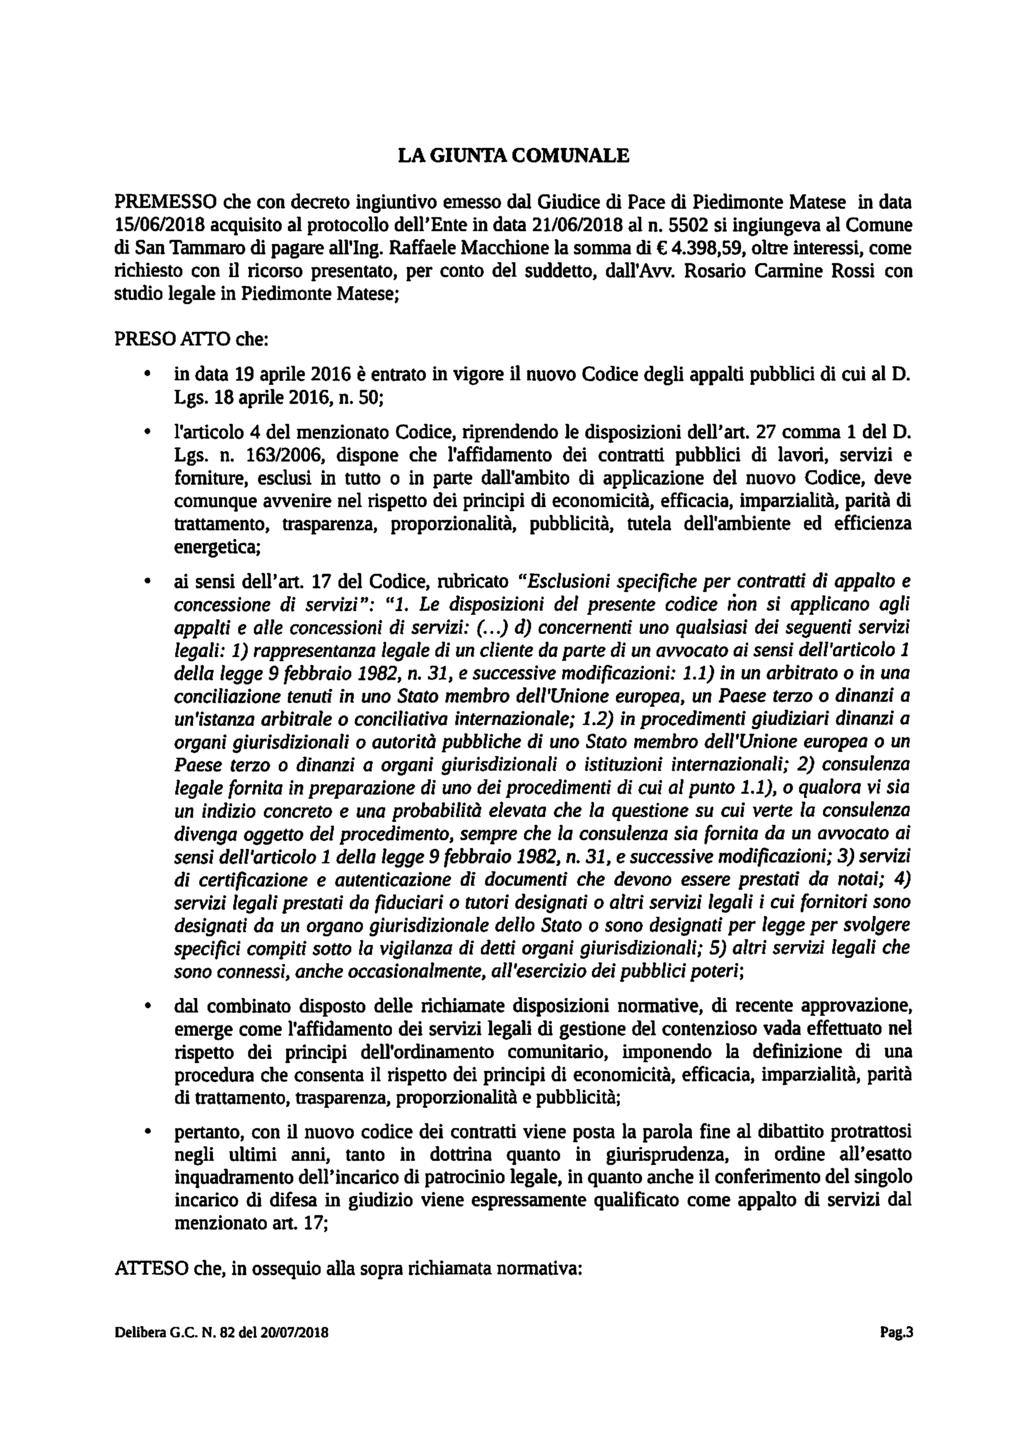 LA GIUNTA COMUNALE PREMESSO che con decreto ingiuntivo emesso dal Giudice di Pace di Piedimonte Matese in data 15/06/2018 acquisito al protocollo dell'ente in data 21/06/2018 al n.